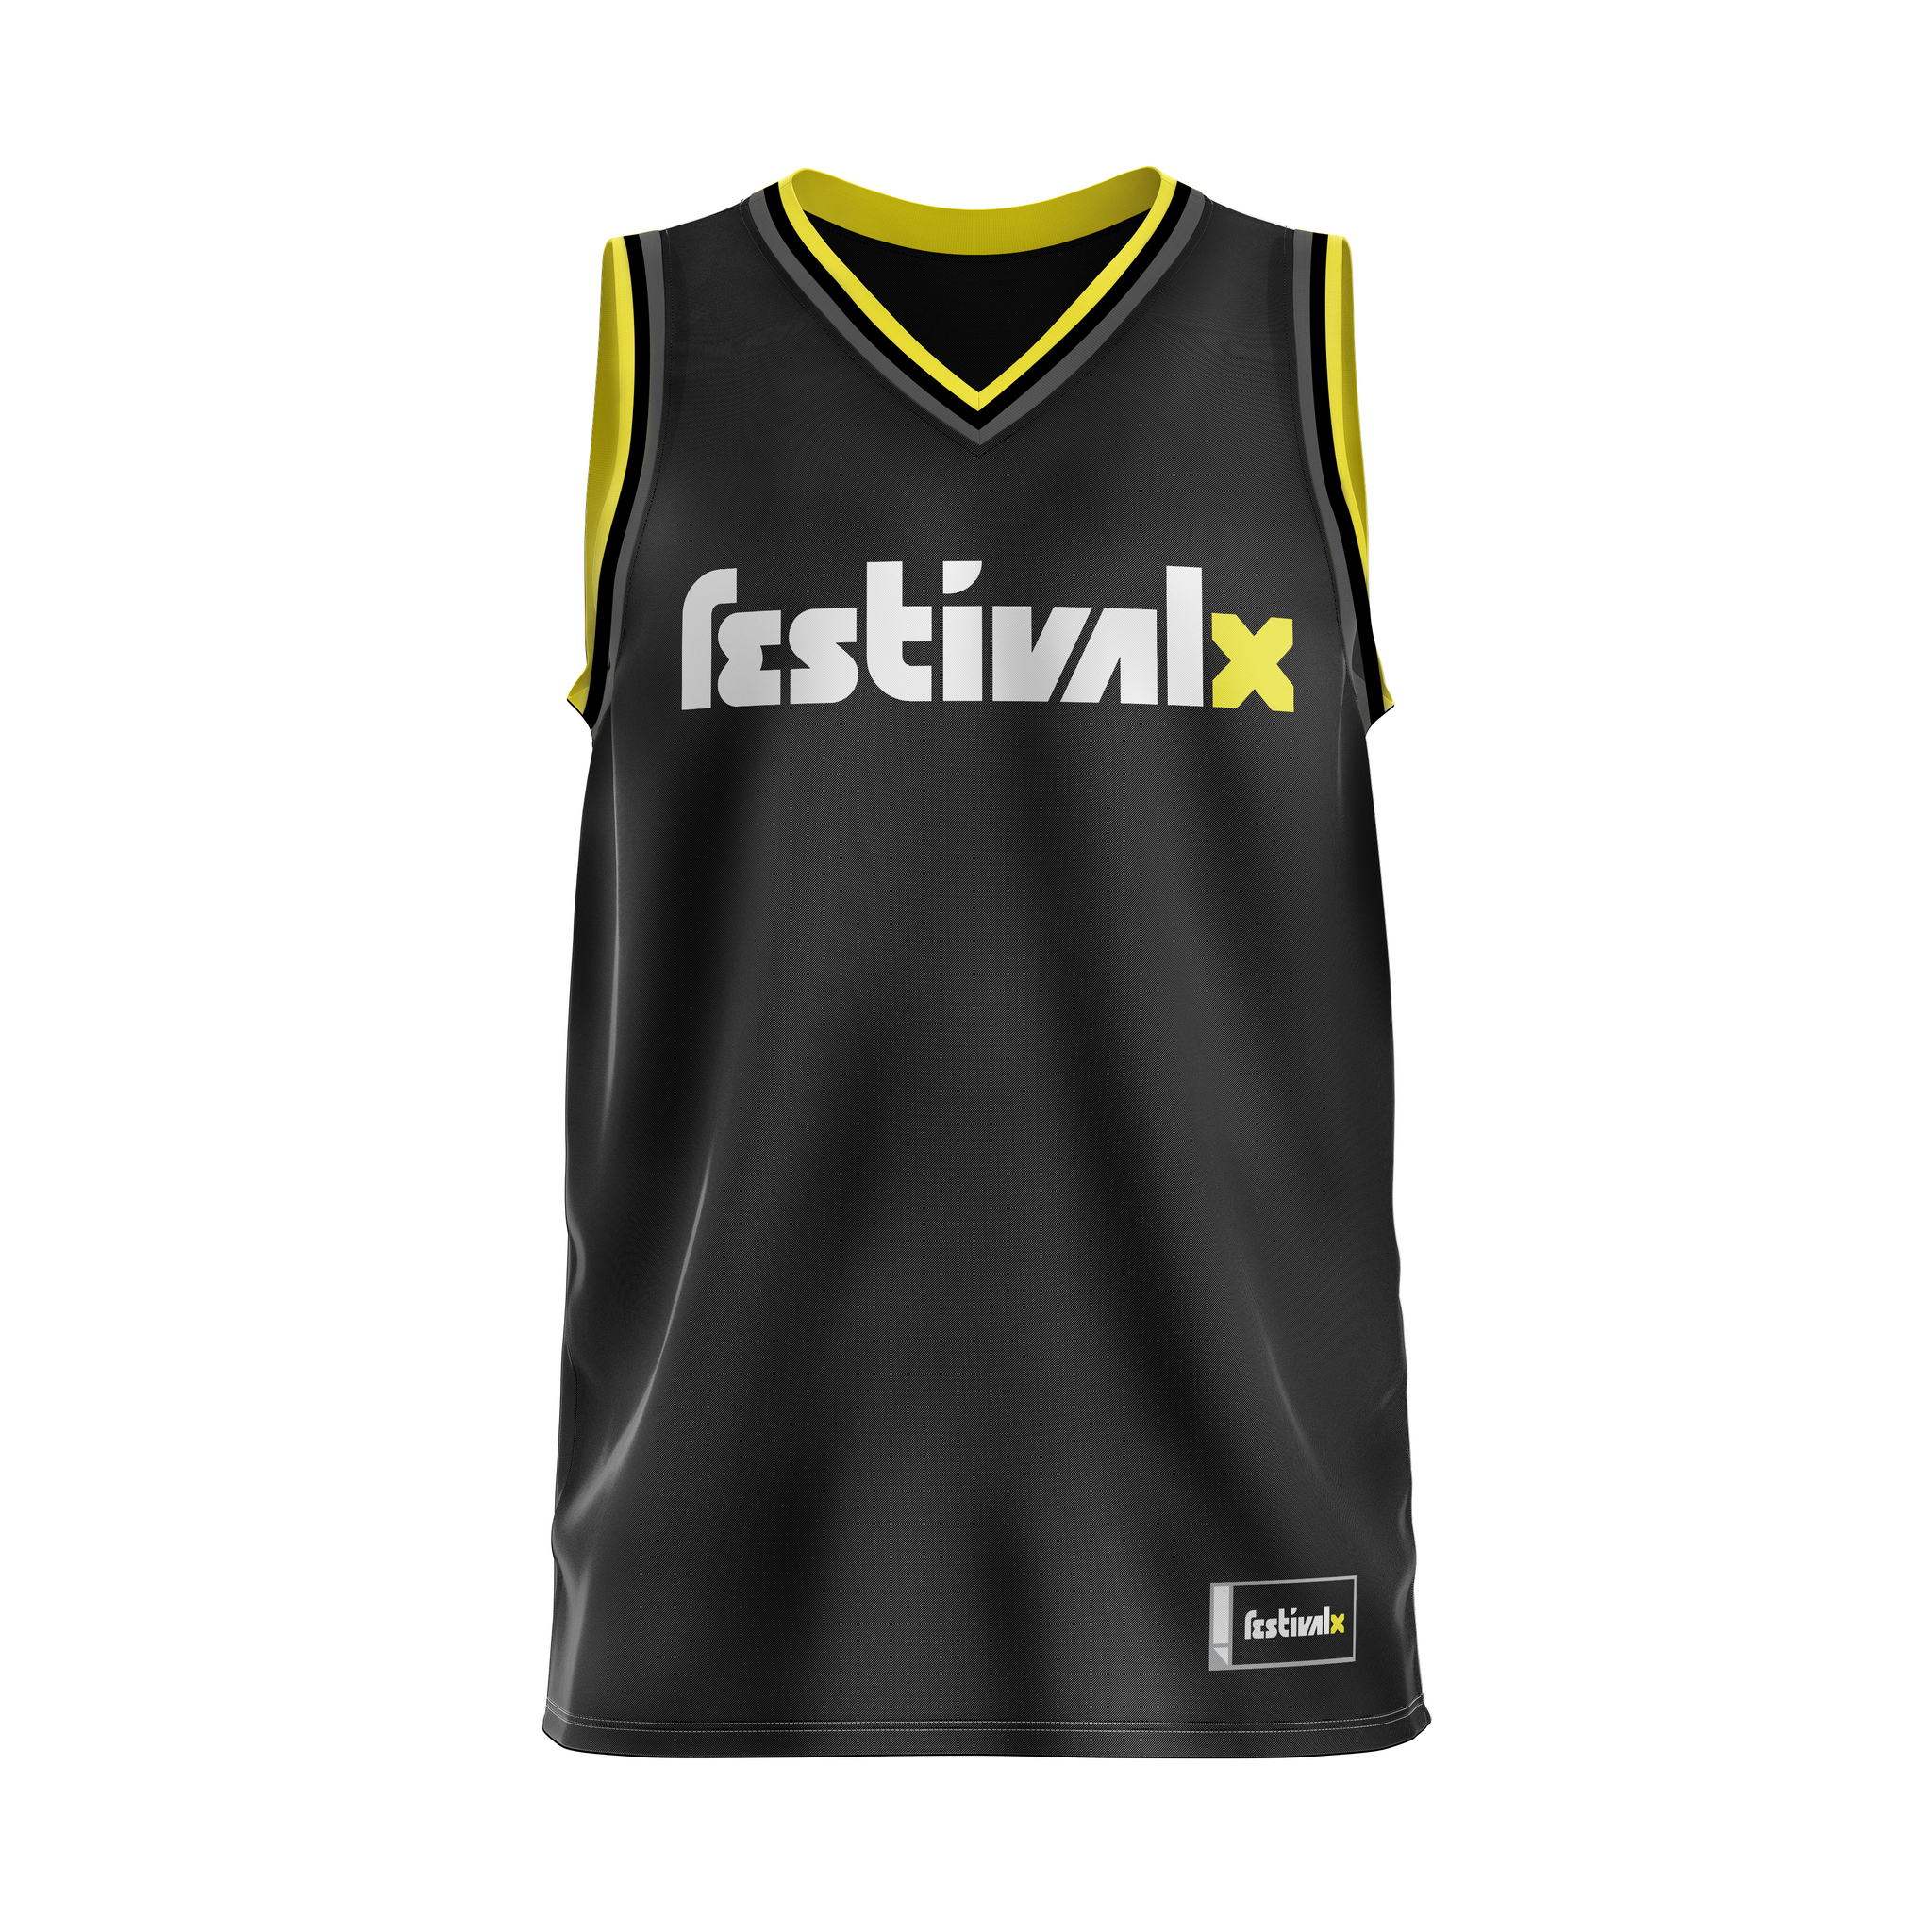 black yellow jersey basketball